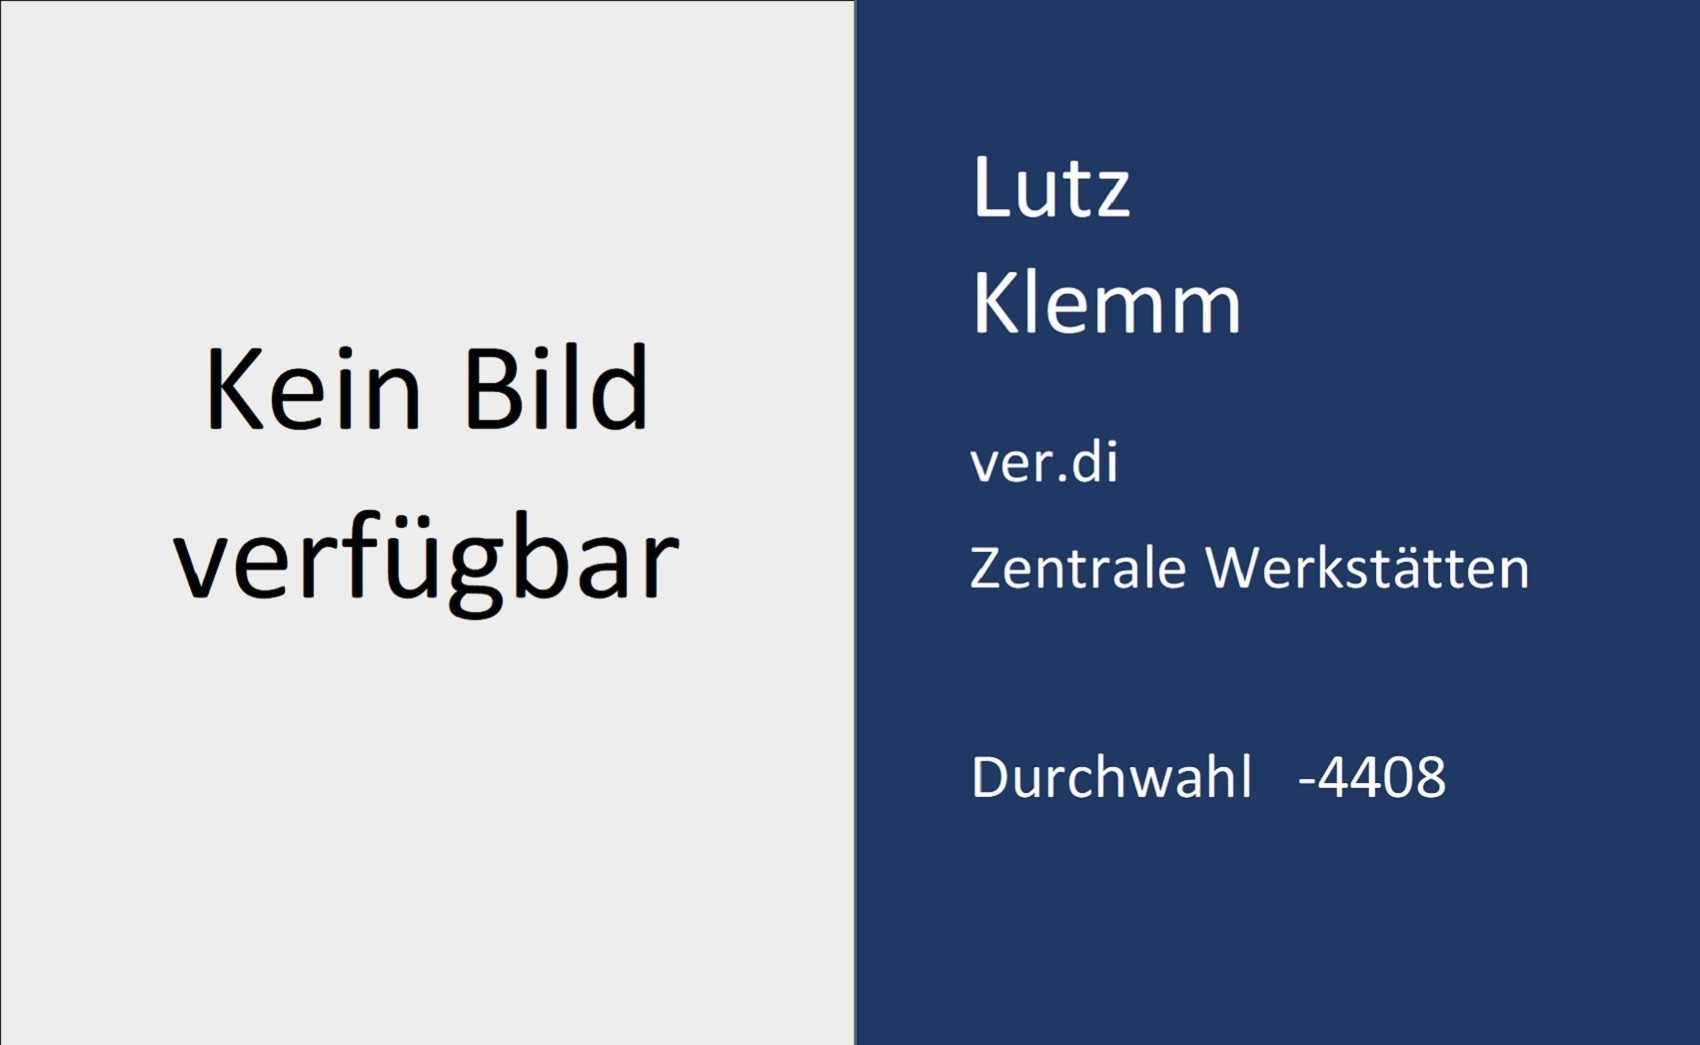 Lutz Klemm, Kontaktdaten, Durchwahl, 4 4 0 8, Email, l.klemm ät m x.uni minus saarland.d e